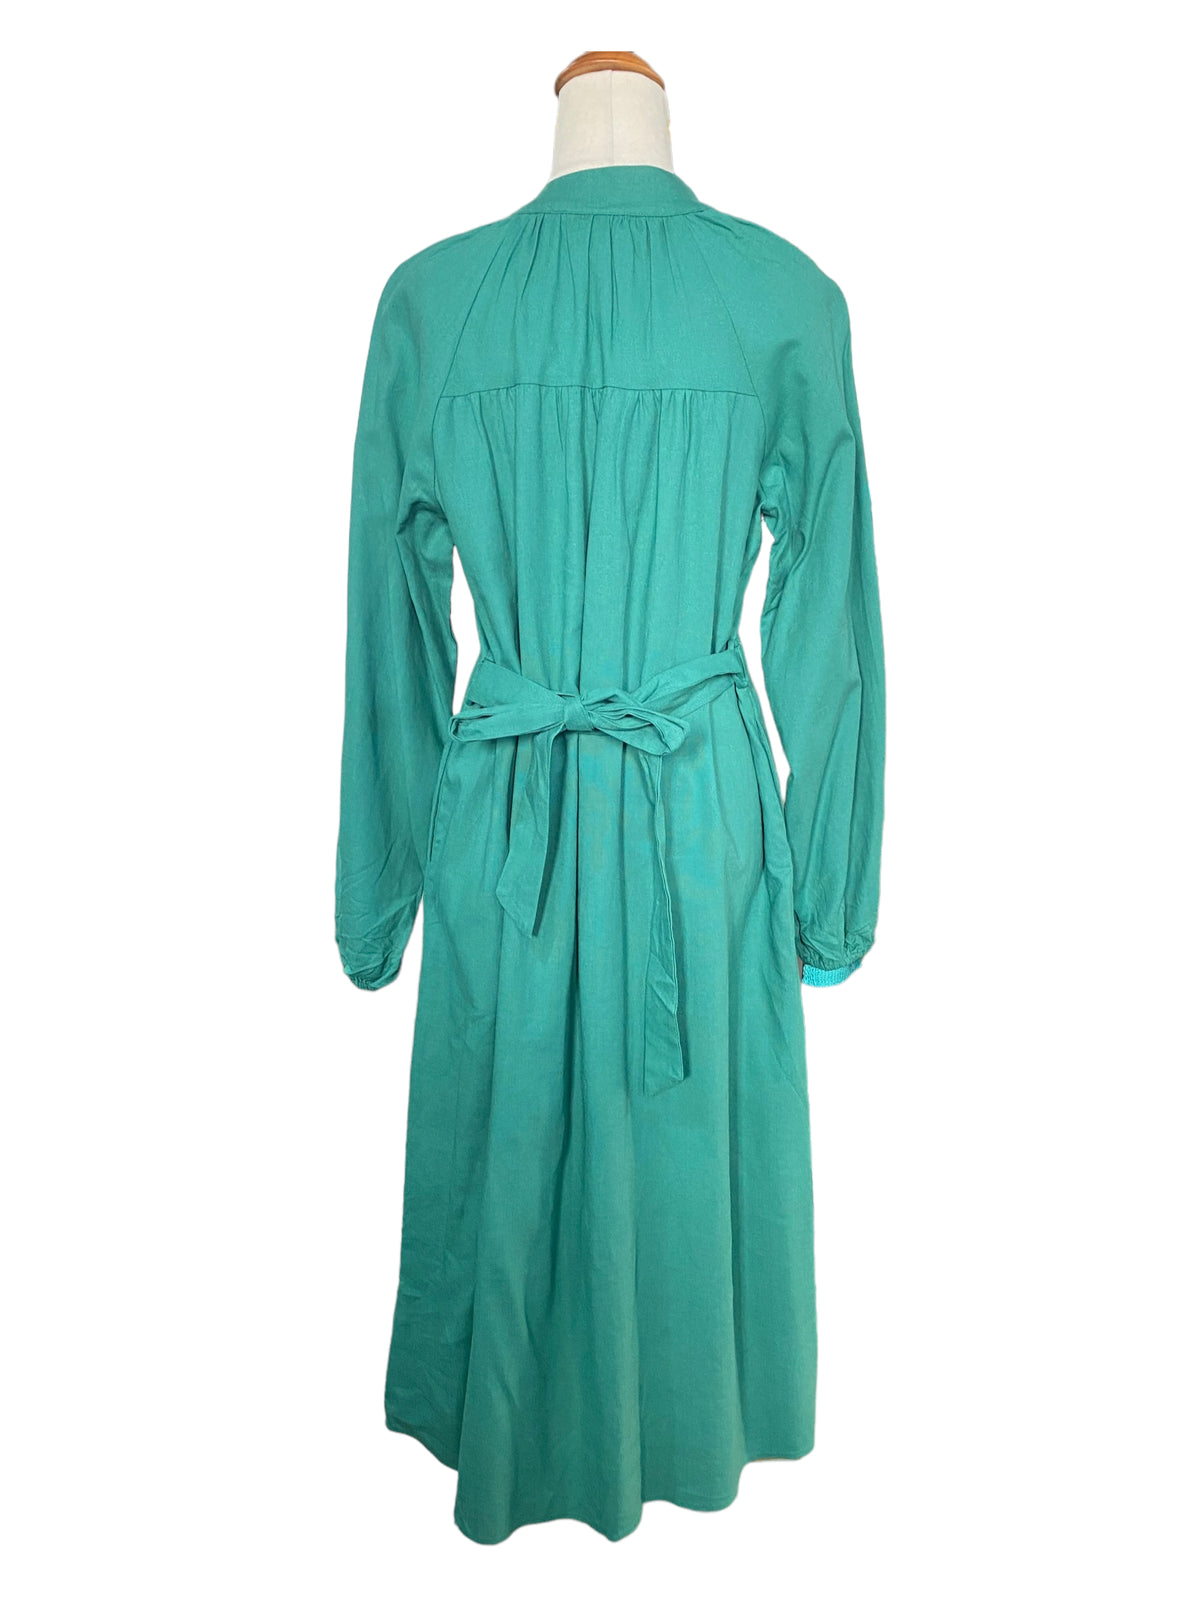 'Kaylee' Midi Linen Dress - Turquoise